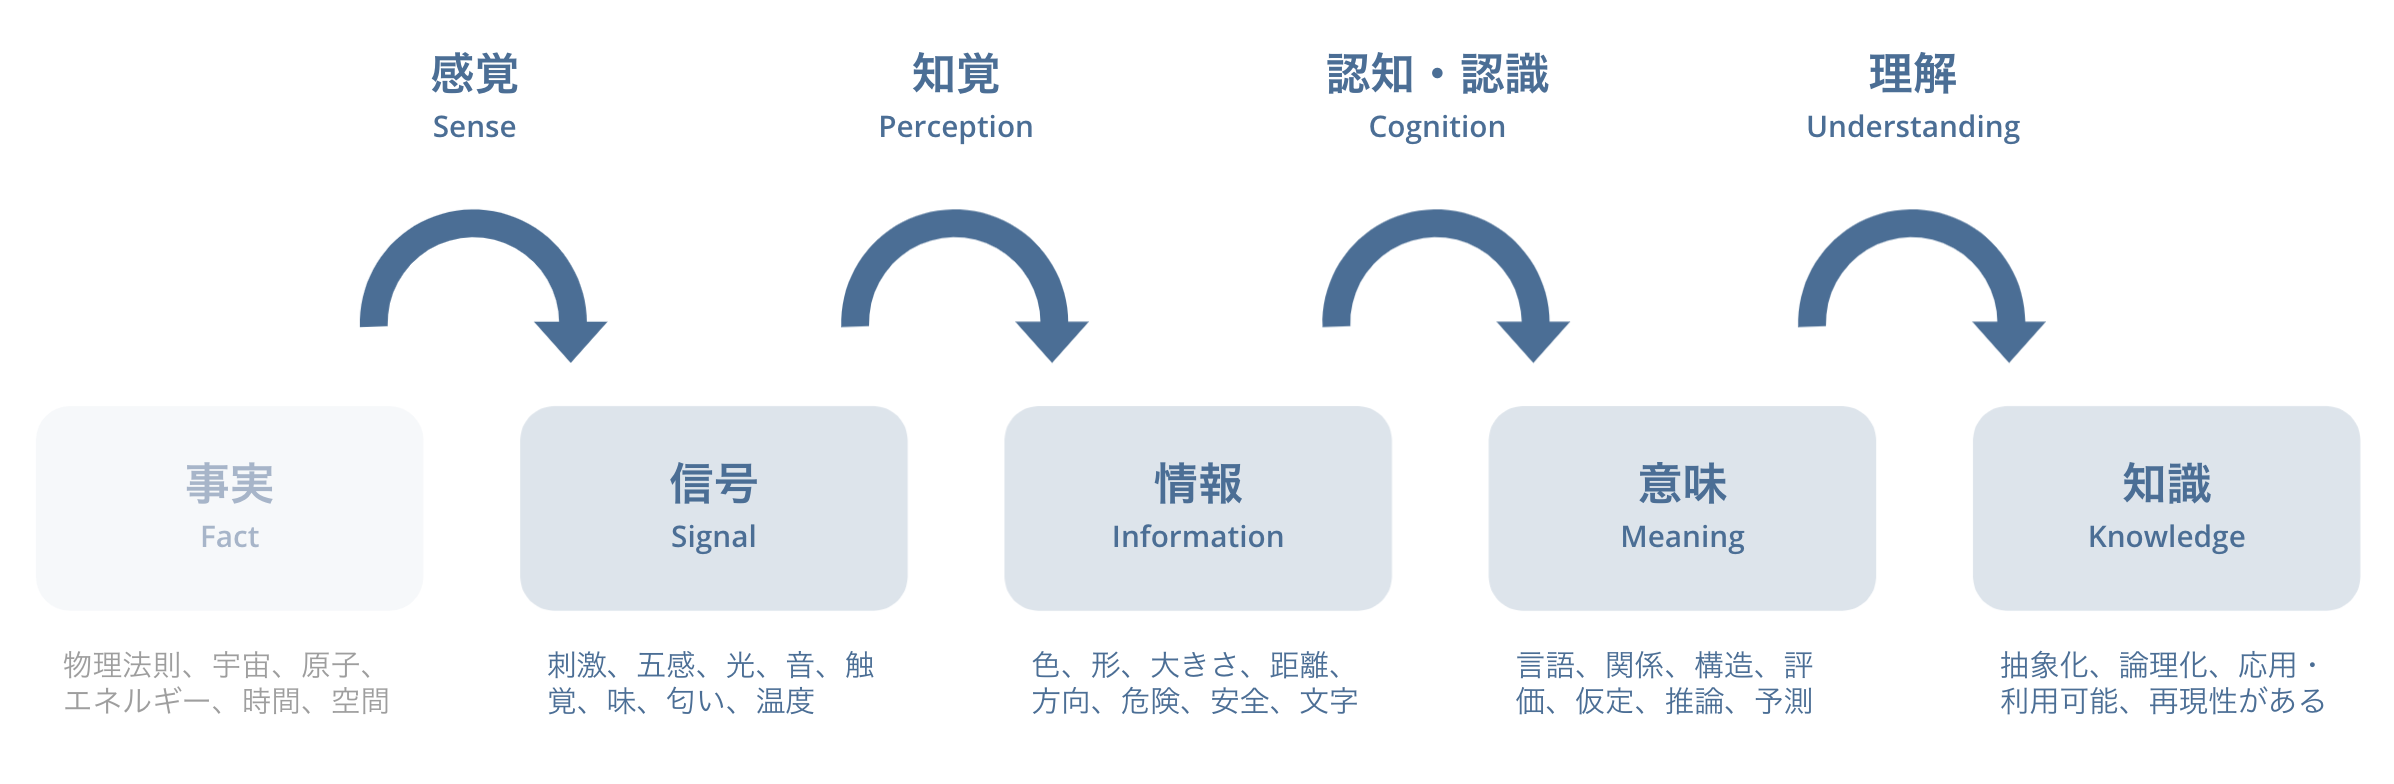 【図】情報と認知について、過程を感覚→知覚→認知・認識→理解、の4ステップに分けてプロセスとして示したもの。詳しくは後述する。